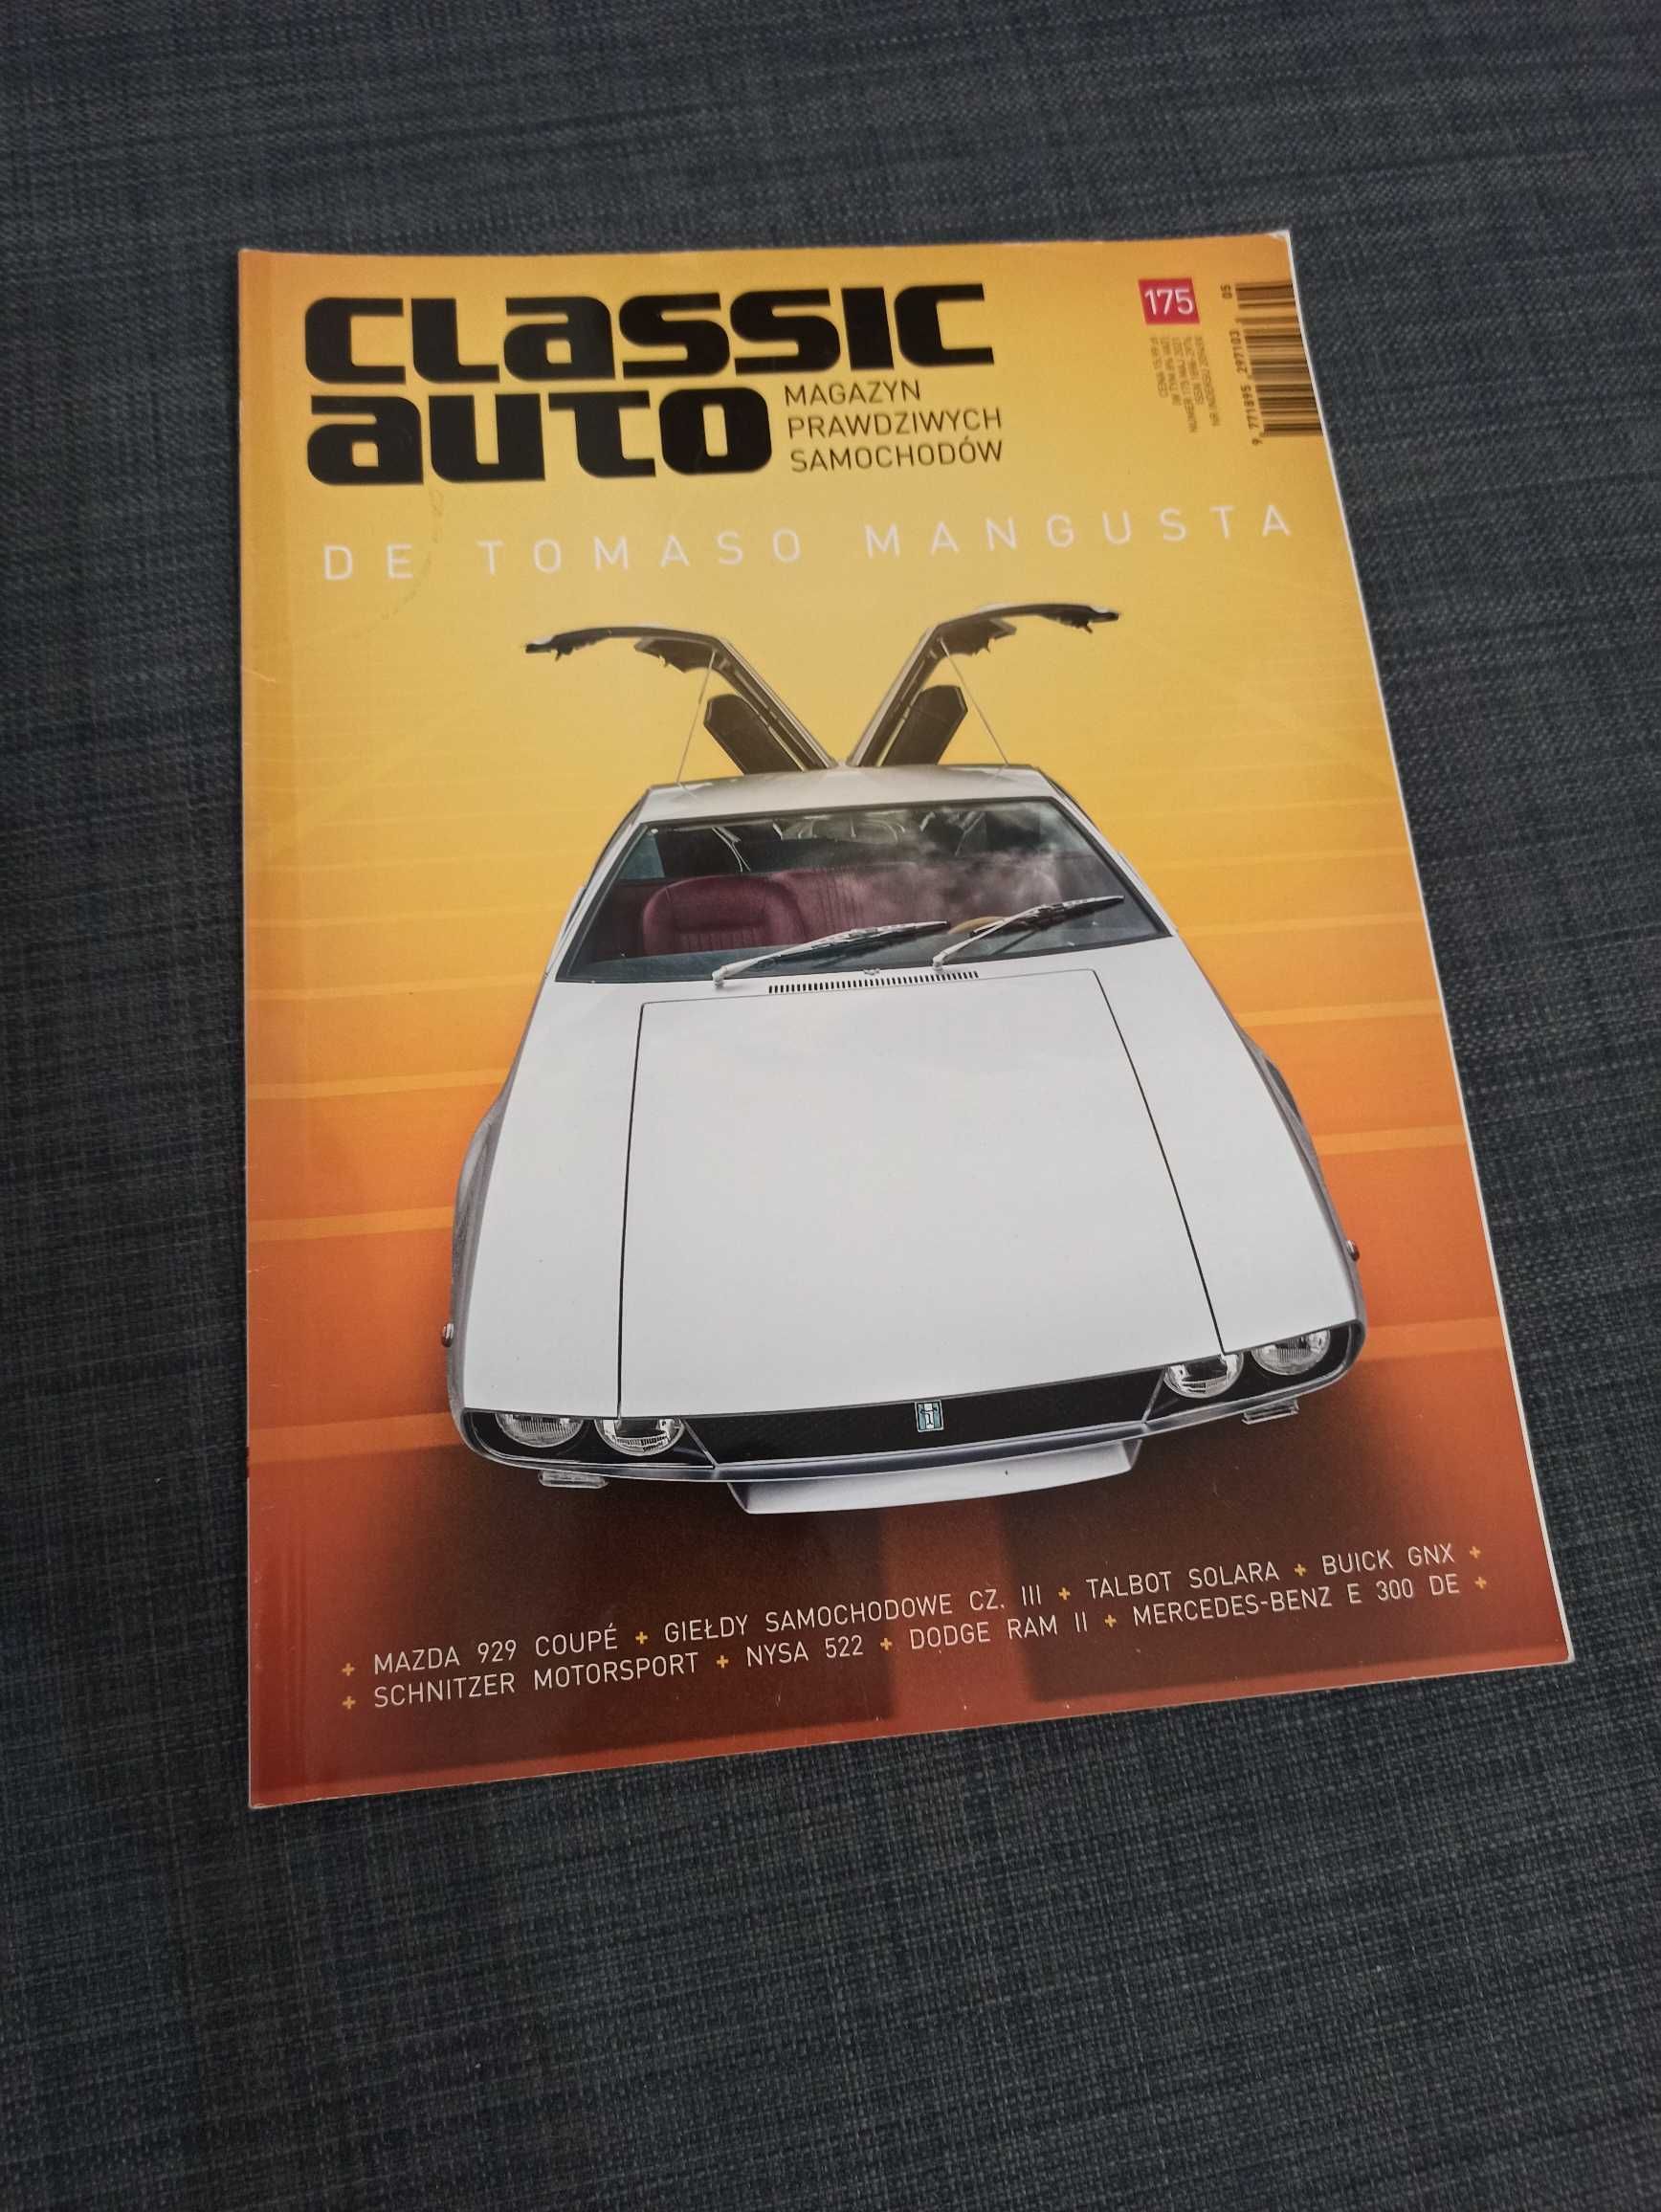 Classic Auto gazety Classicauto - 32 numery